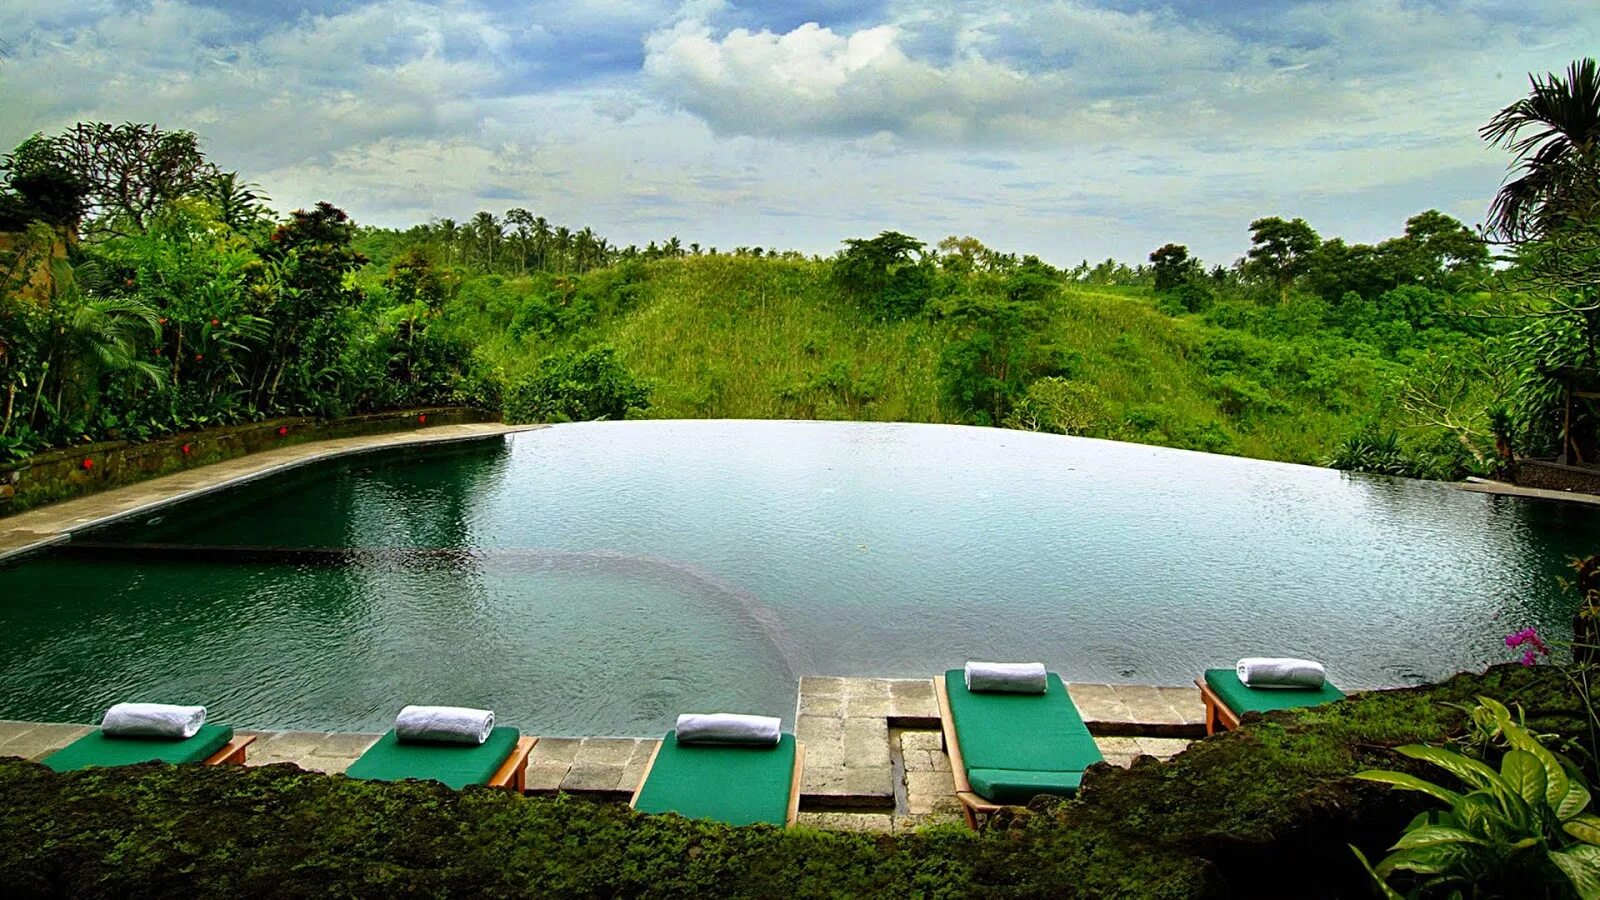 Висячие сады Убуда отель Бали. Отель Ubud Hanging Gardens Бали Индонезия. Hanging Gardens Ubud бассейн. Бали Убуд бассейн. Бассейн бали